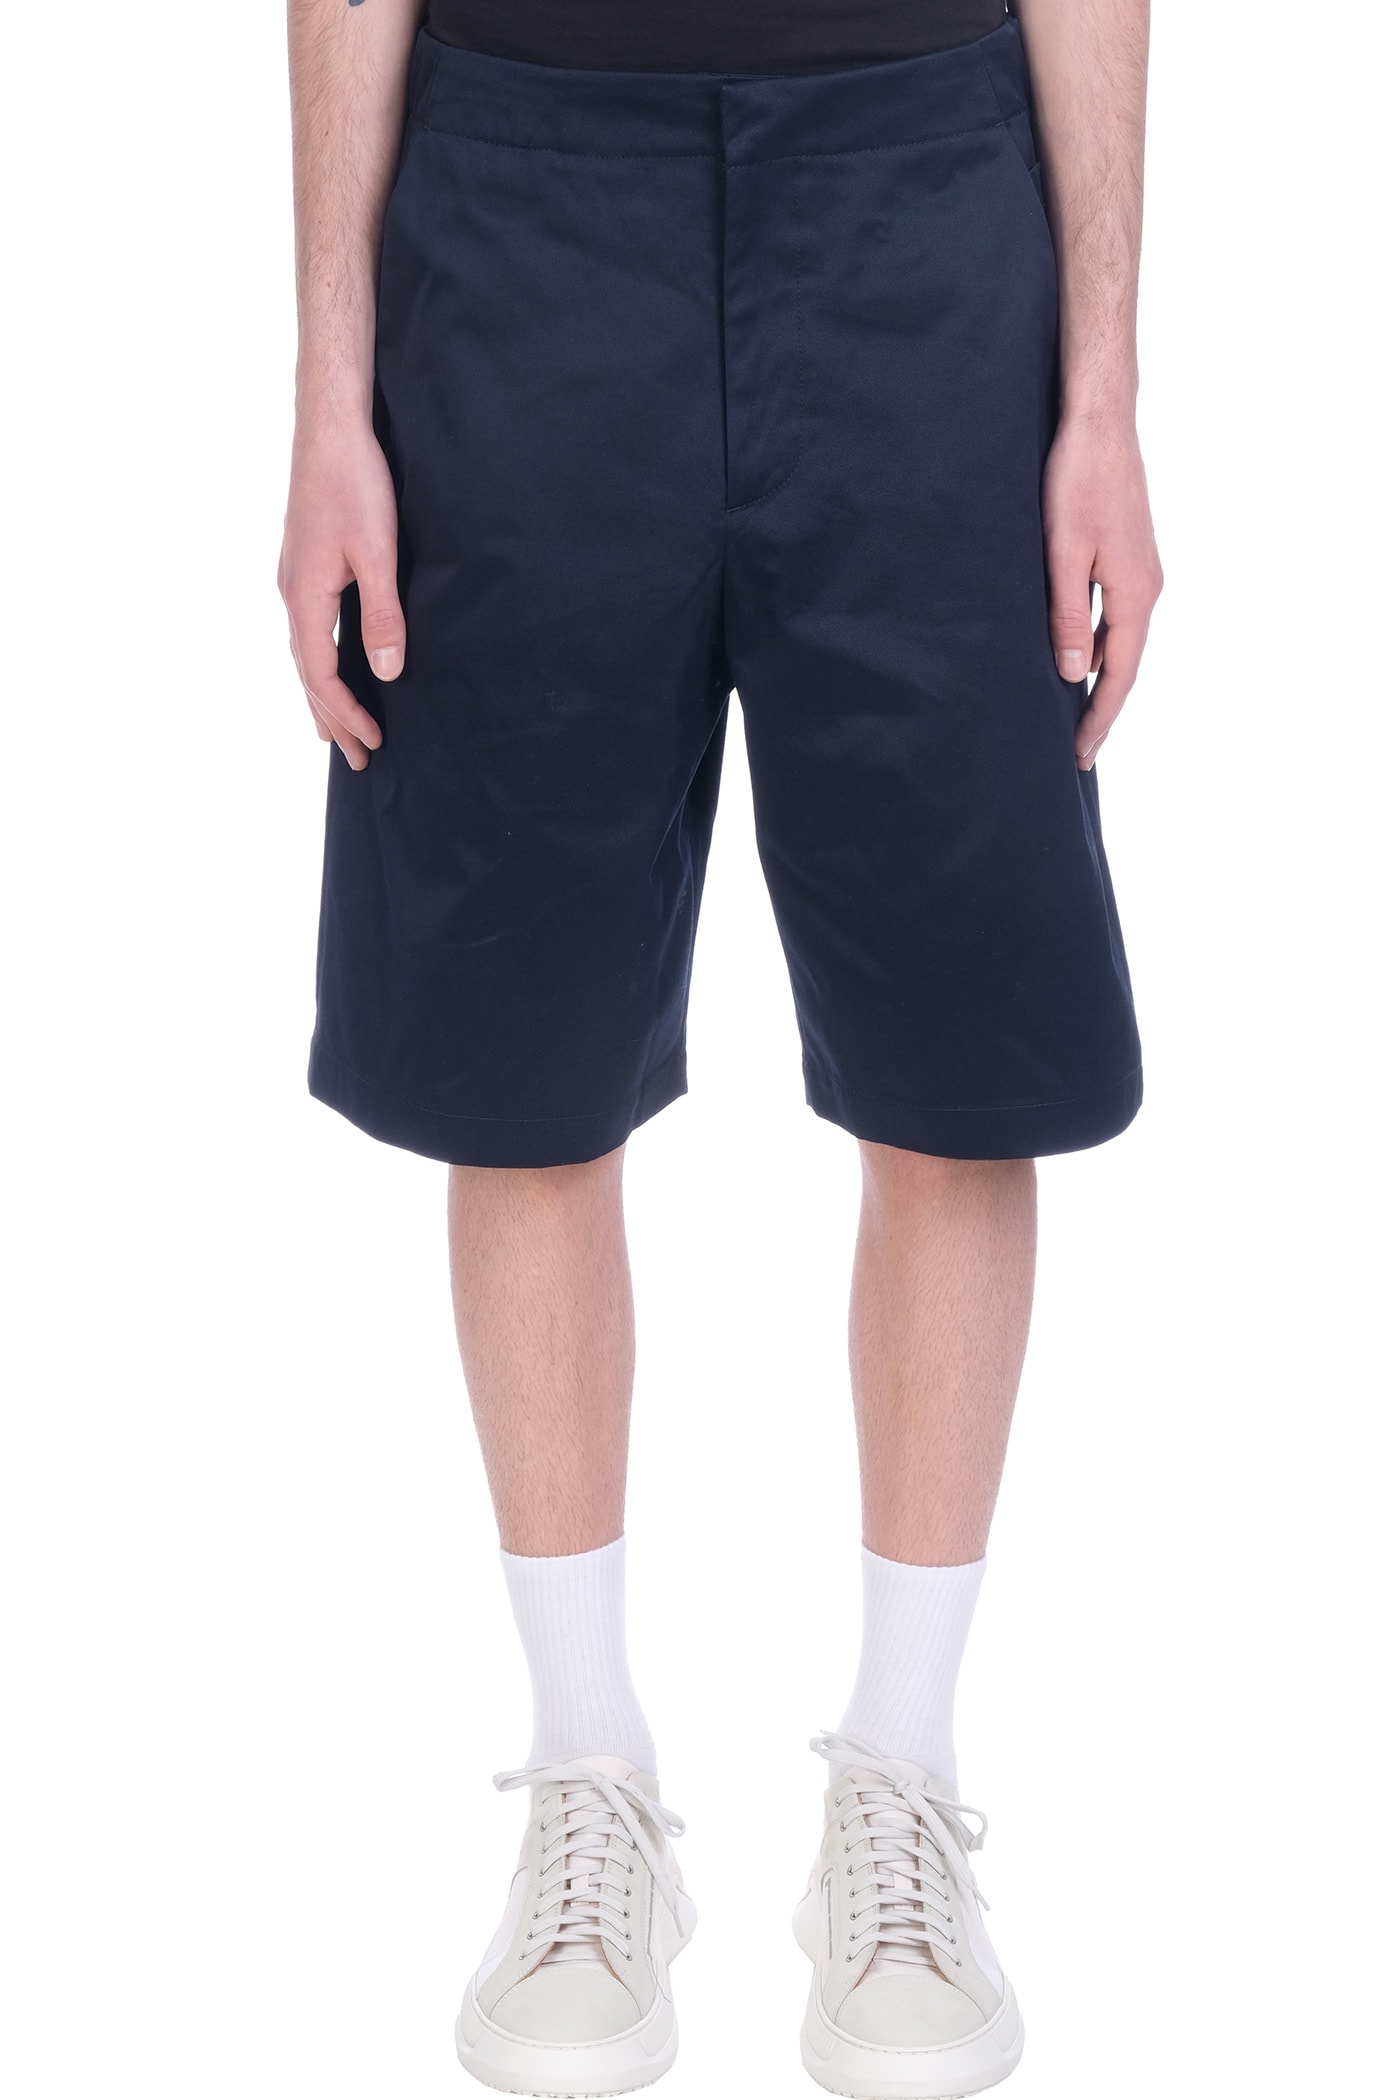 OAMC Vapor Shorts In Blue Cotton